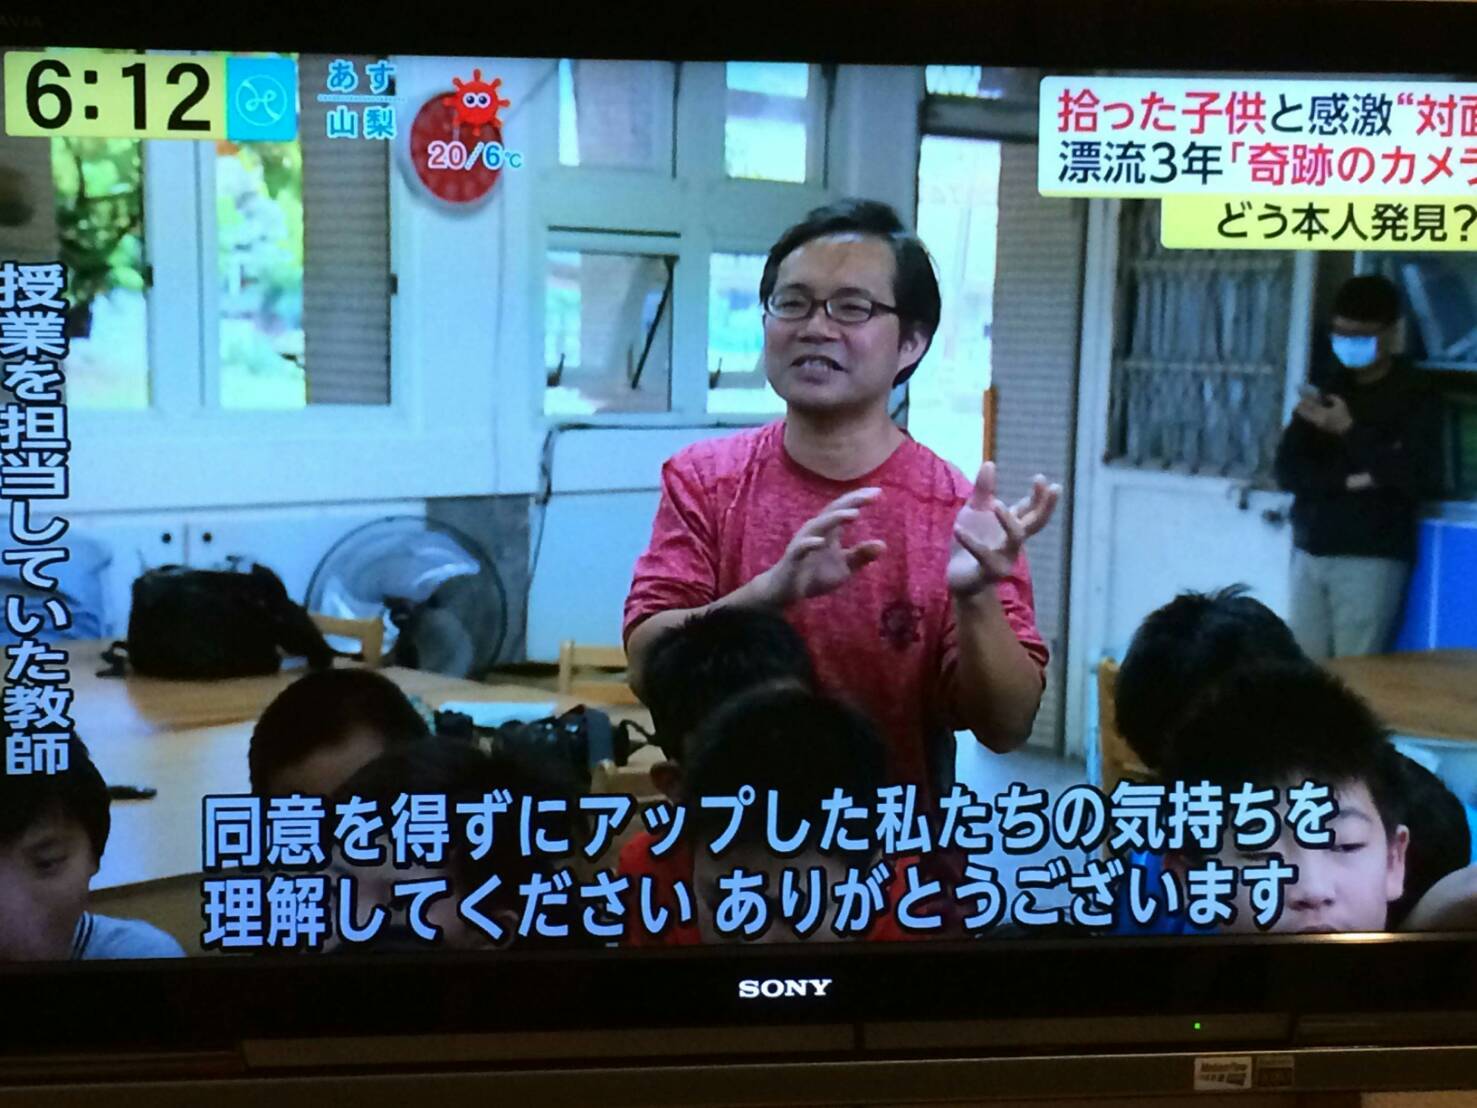 漂海相機牽起臺日情誼 日本富士電視至岳明國小直播